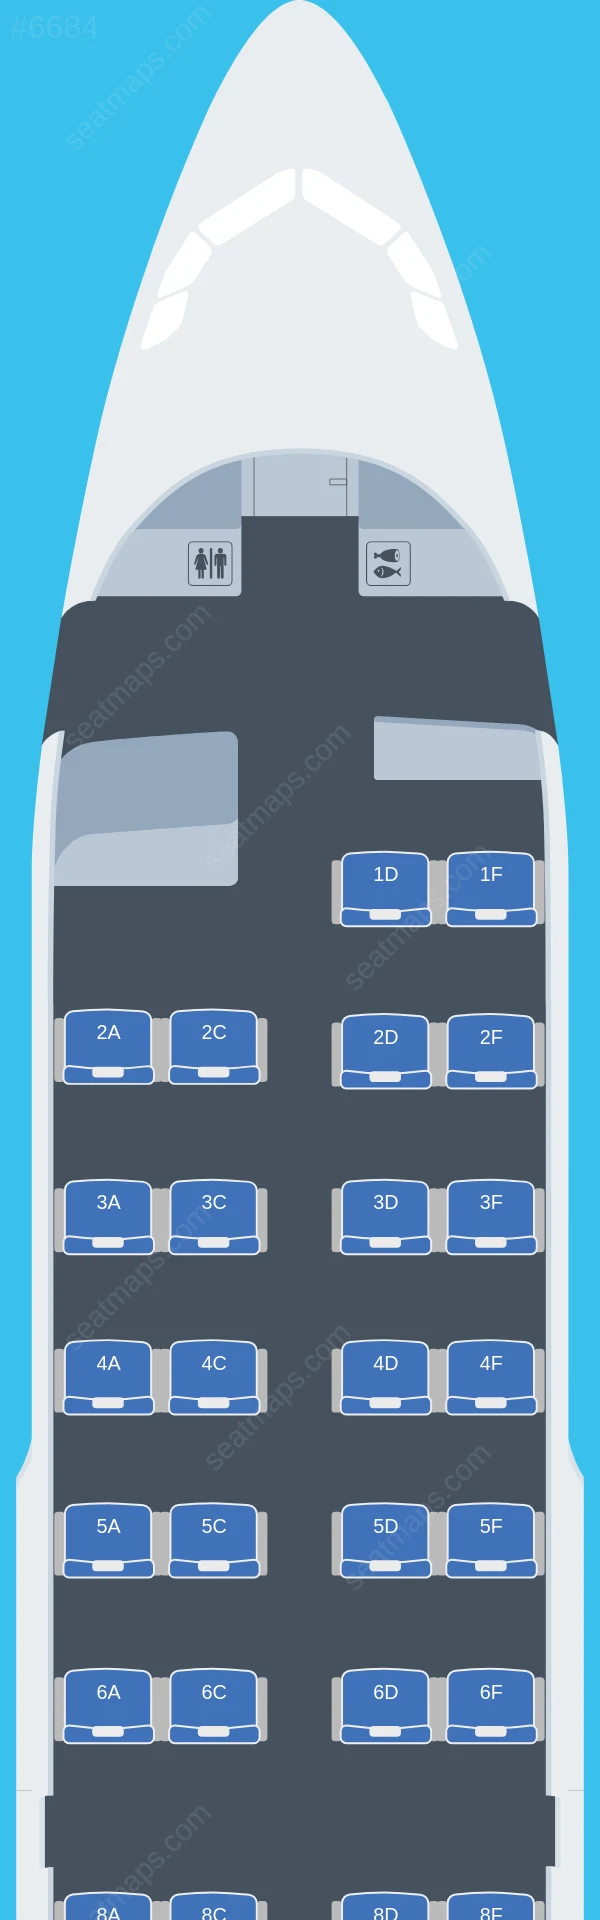 Air Canada Airbus A319-100 V.2 seatmap preview